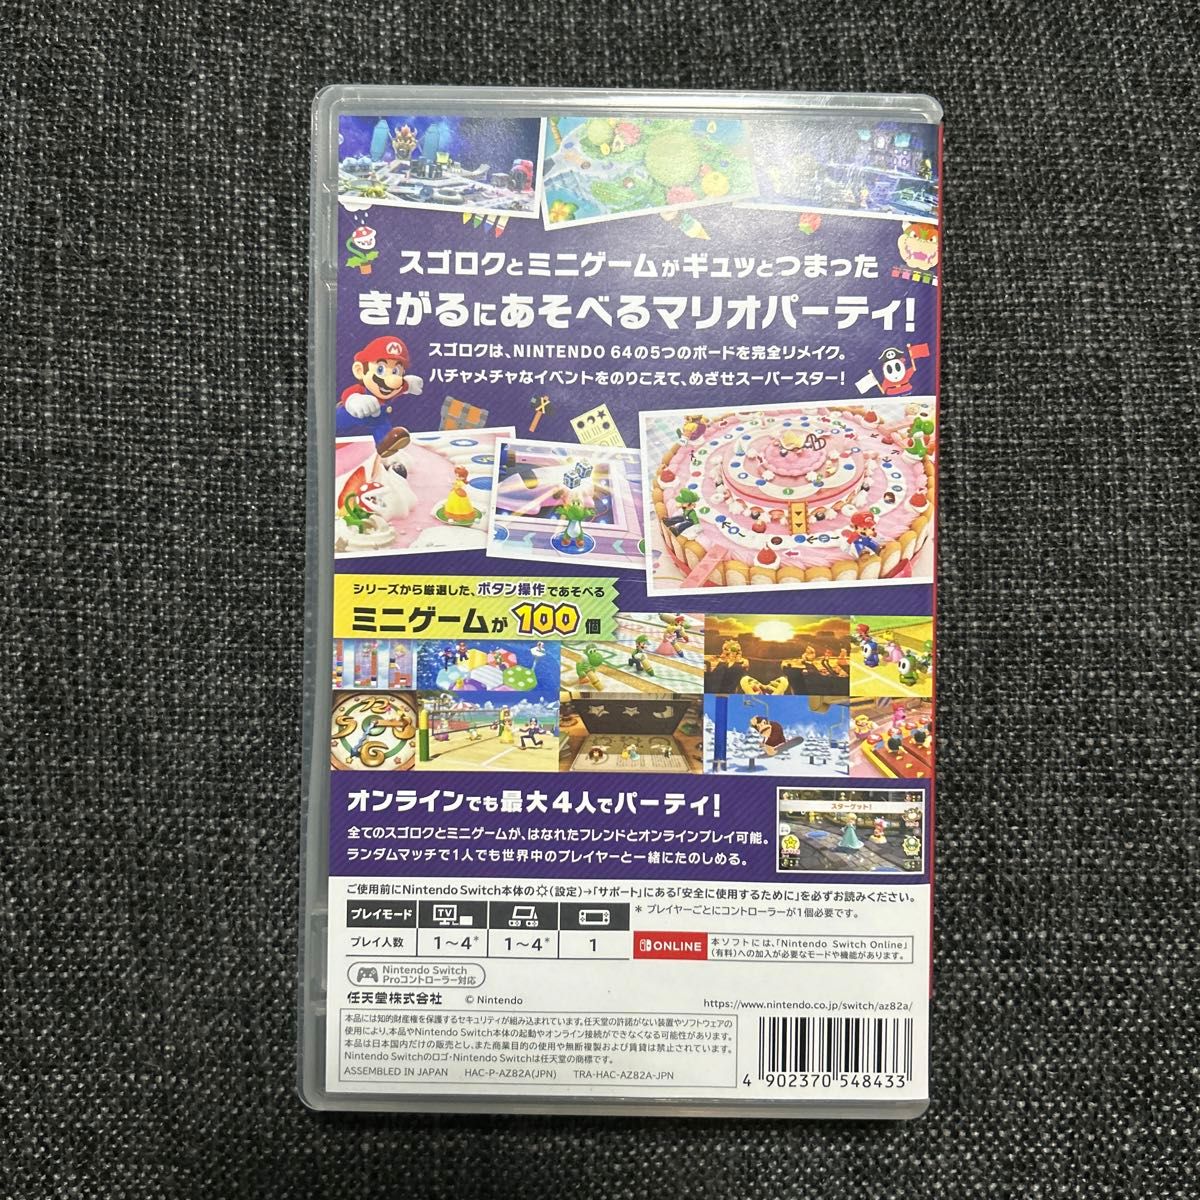  【Switch】 マリオパーティ スーパースターズ